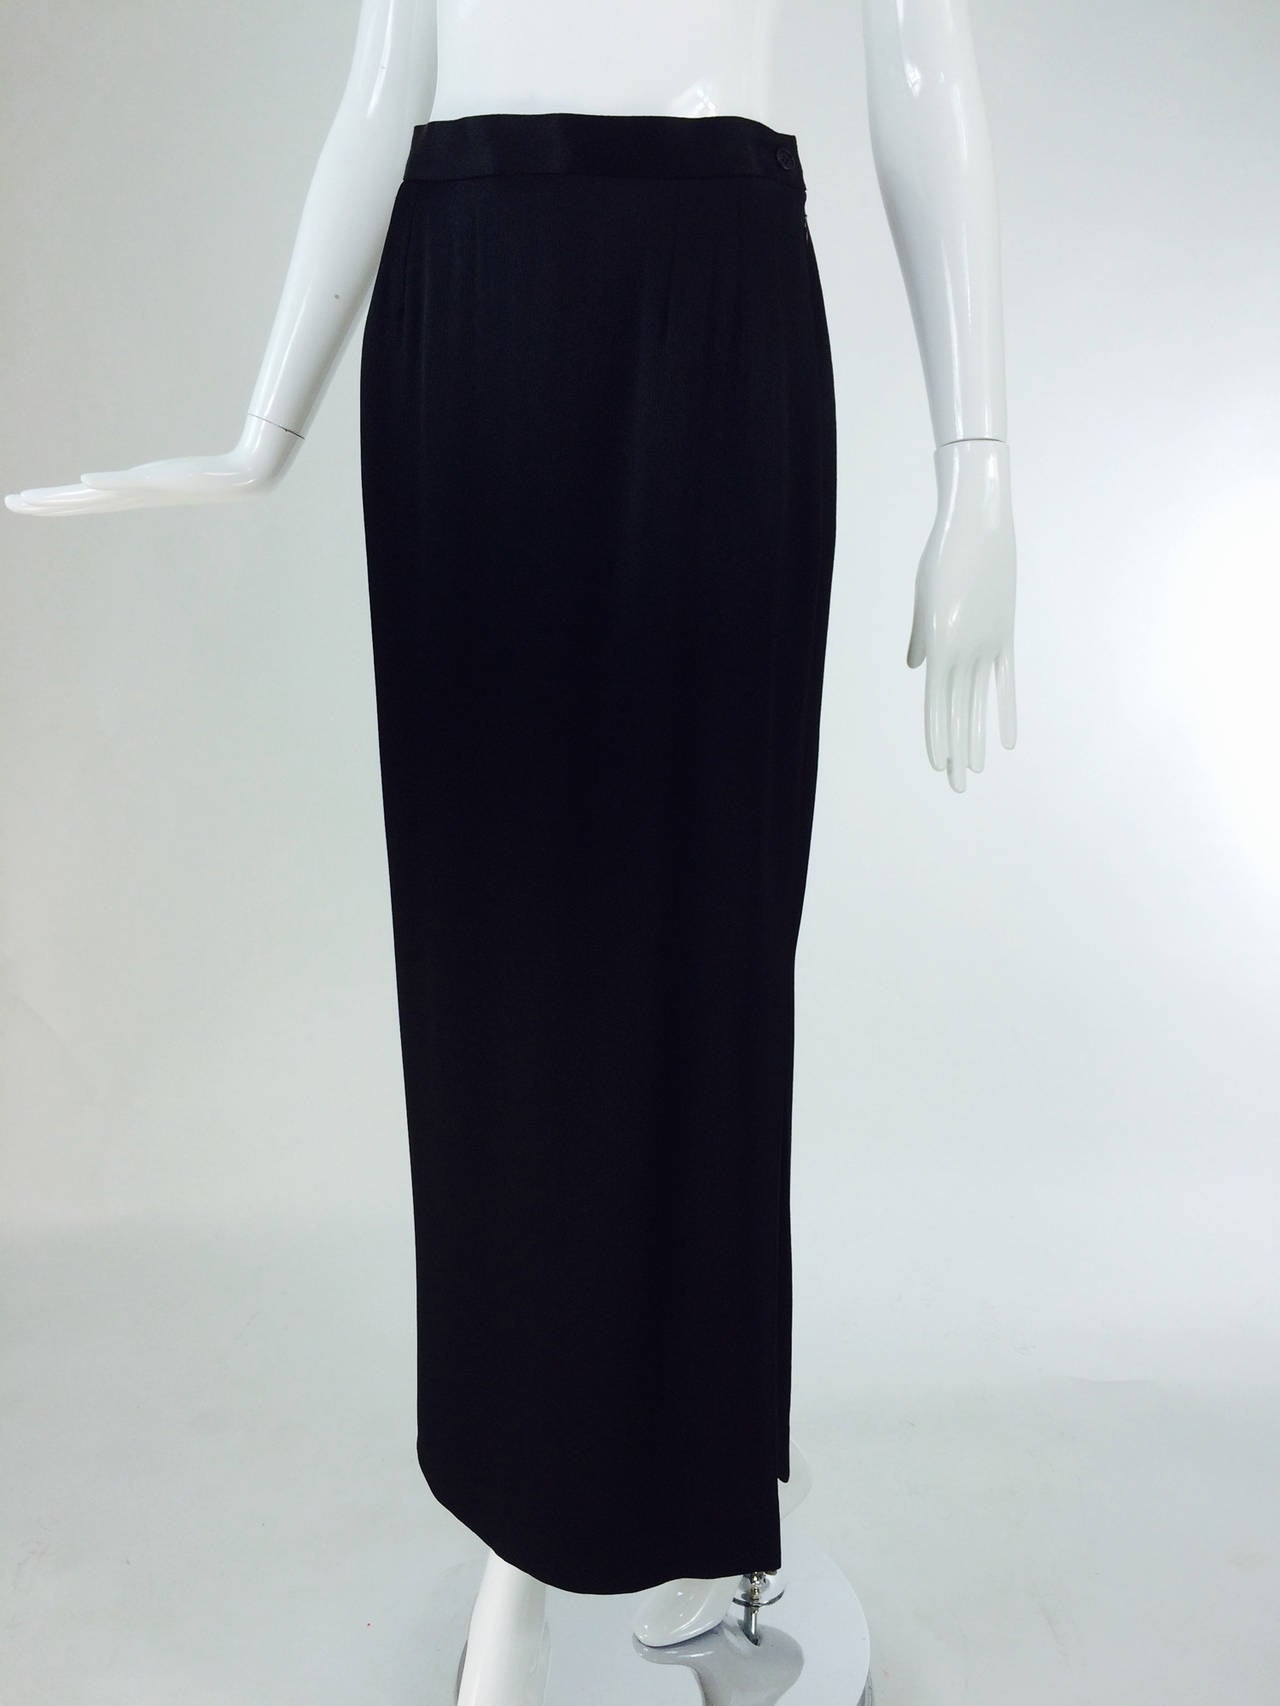 Yves St Laurent Rive Gauche black hammered satin evening skirt 1